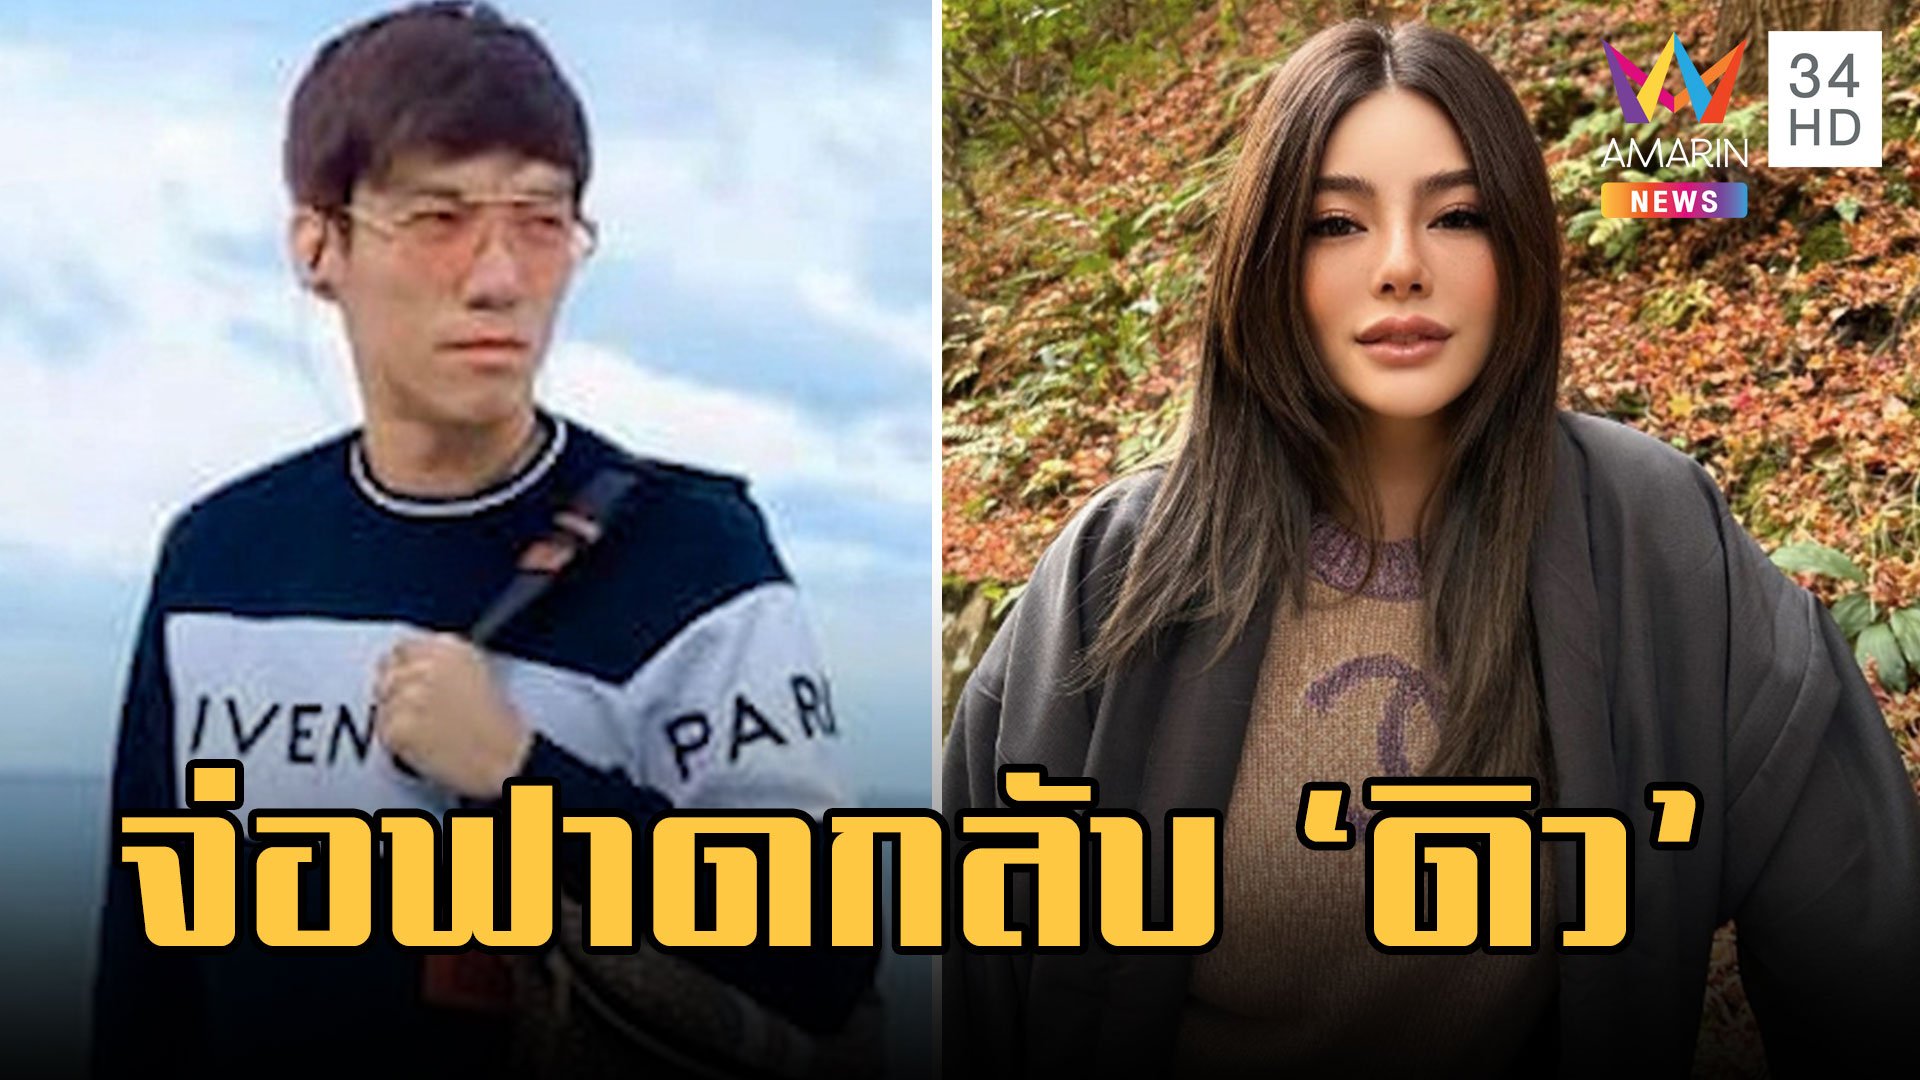 "เบนซ์ เดม่อน" กลับไทยวันนี้ มอบตัวพร้อมน้องชาย จ่อฟาดกลับ "ดิว อริสรา" | ข่าวอรุณอมรินทร์ | 14 ก.พ. 66 | AMARIN TVHD34